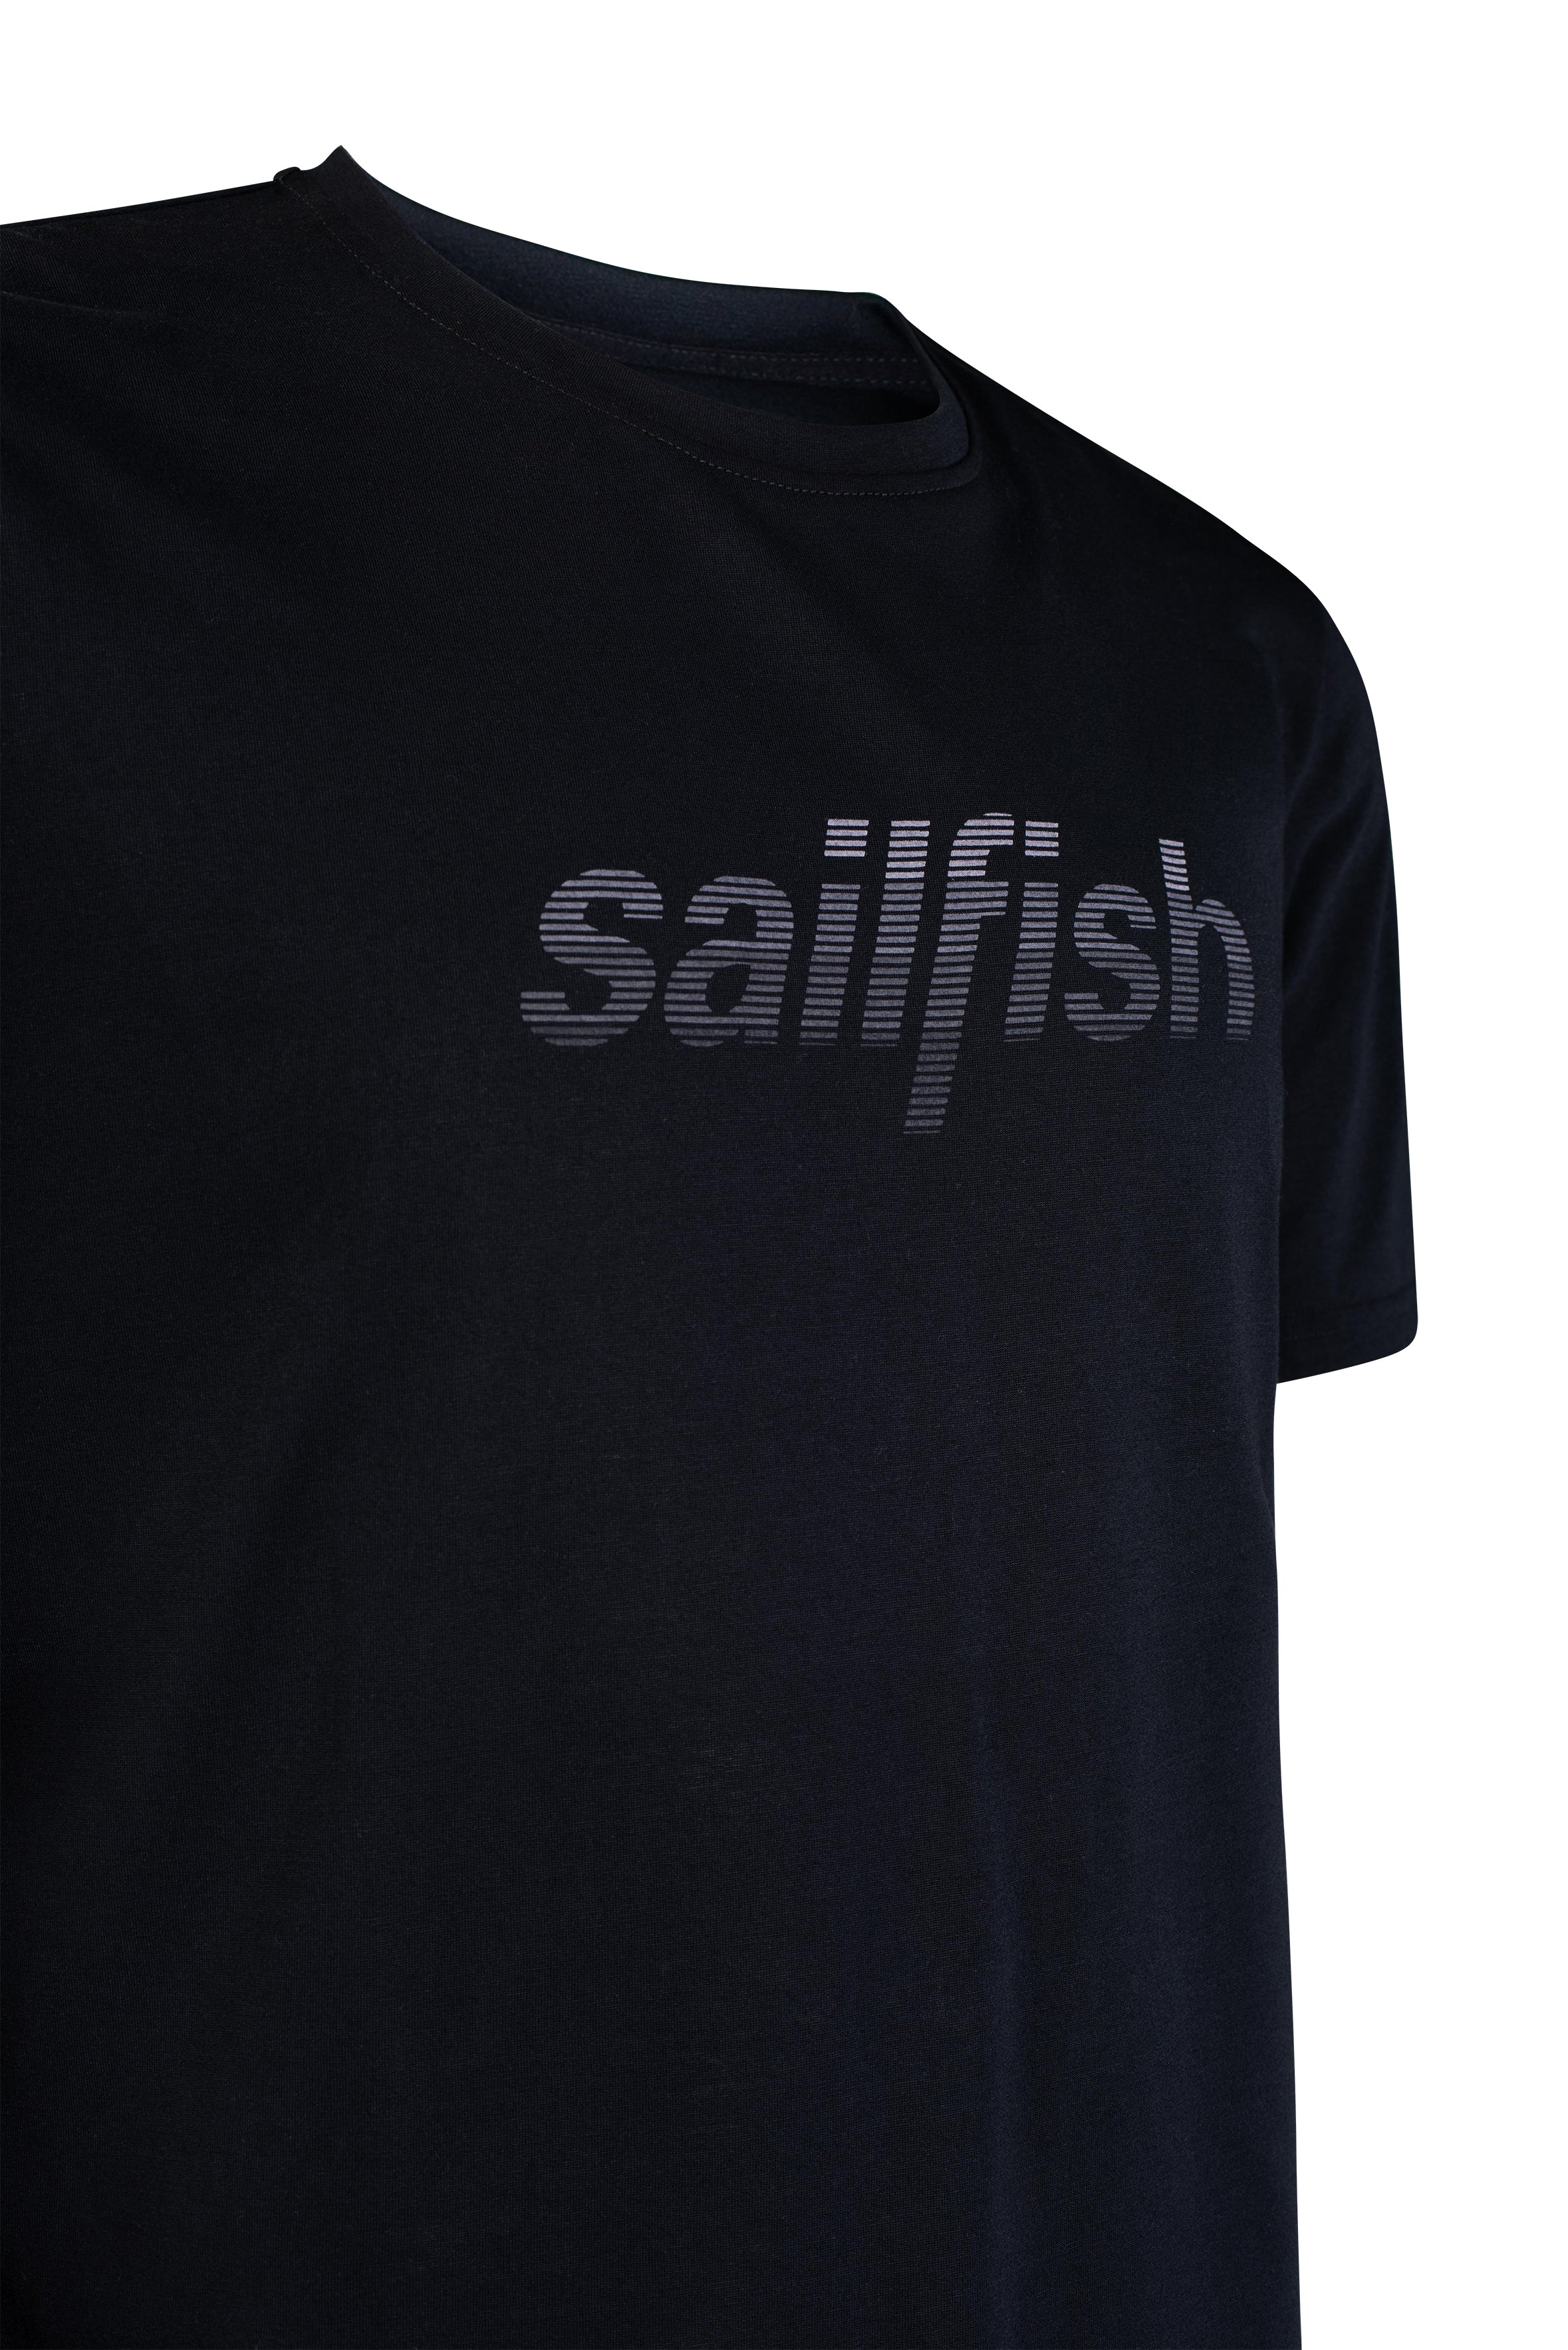 Triathlon T-Shirt Frauen  sailfish Womens T-Shirt Logo - sailfish